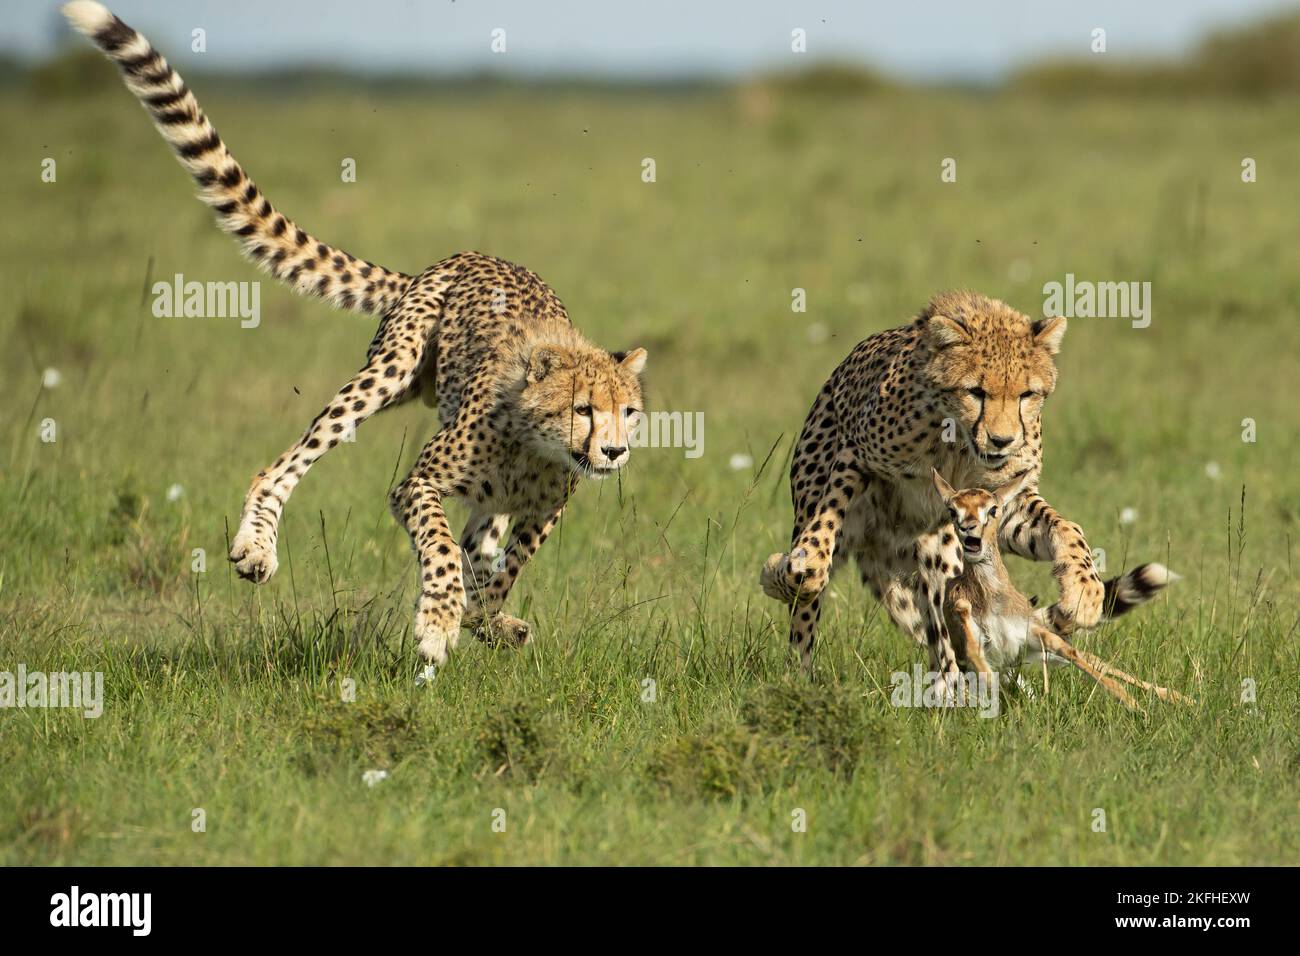 Die Geparden-Mutter (Acinonyx jubatus) lehrt ihre Jungen, wie sie Beute fangen, niederbringen und damit umgehen können Stockfoto